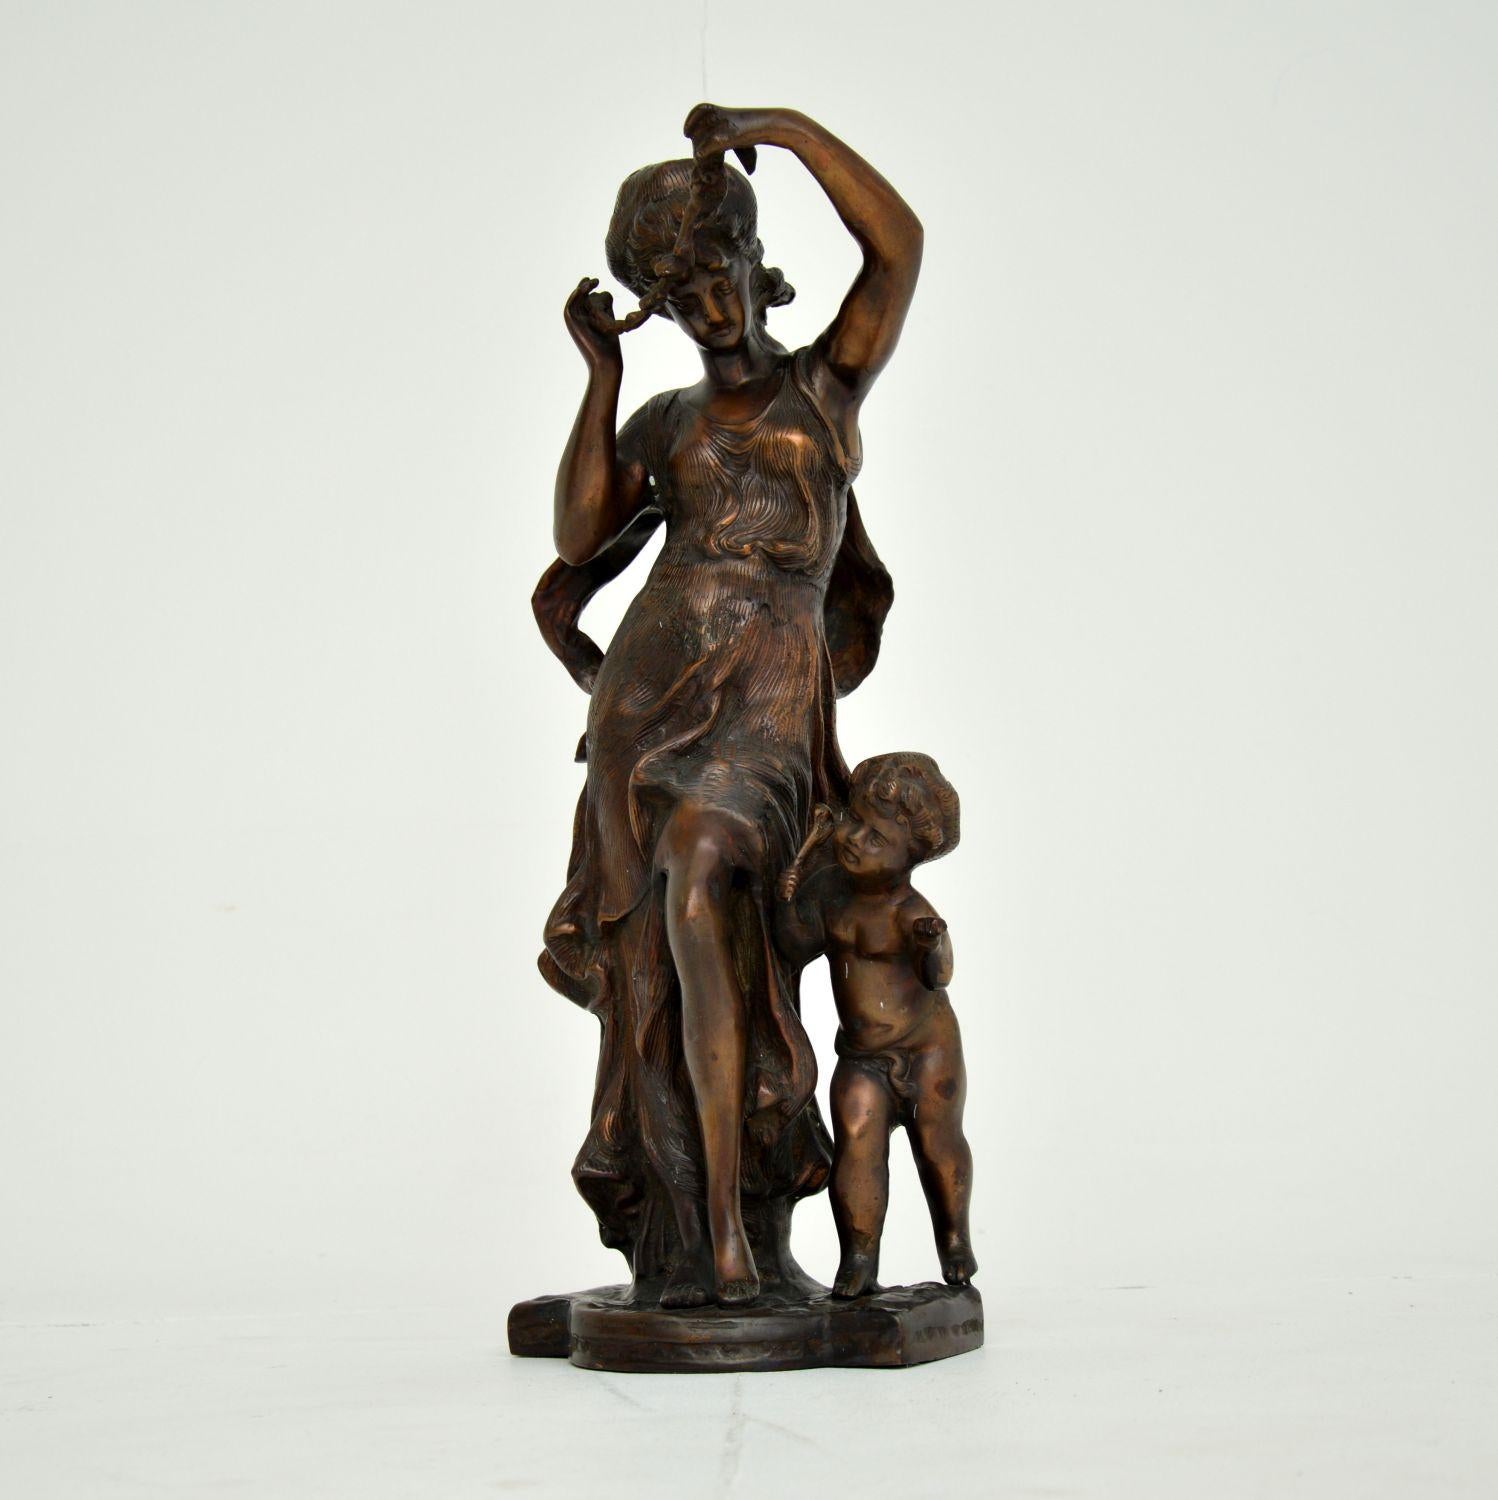 Une belle sculpture ancienne en bronze, représentant une femme et un enfant de l'époque classique. Il a probablement été fabriqué en Europe centrale dans les années 1930-50.

Il est joliment moulé avec des détails complexes, et sa taille est